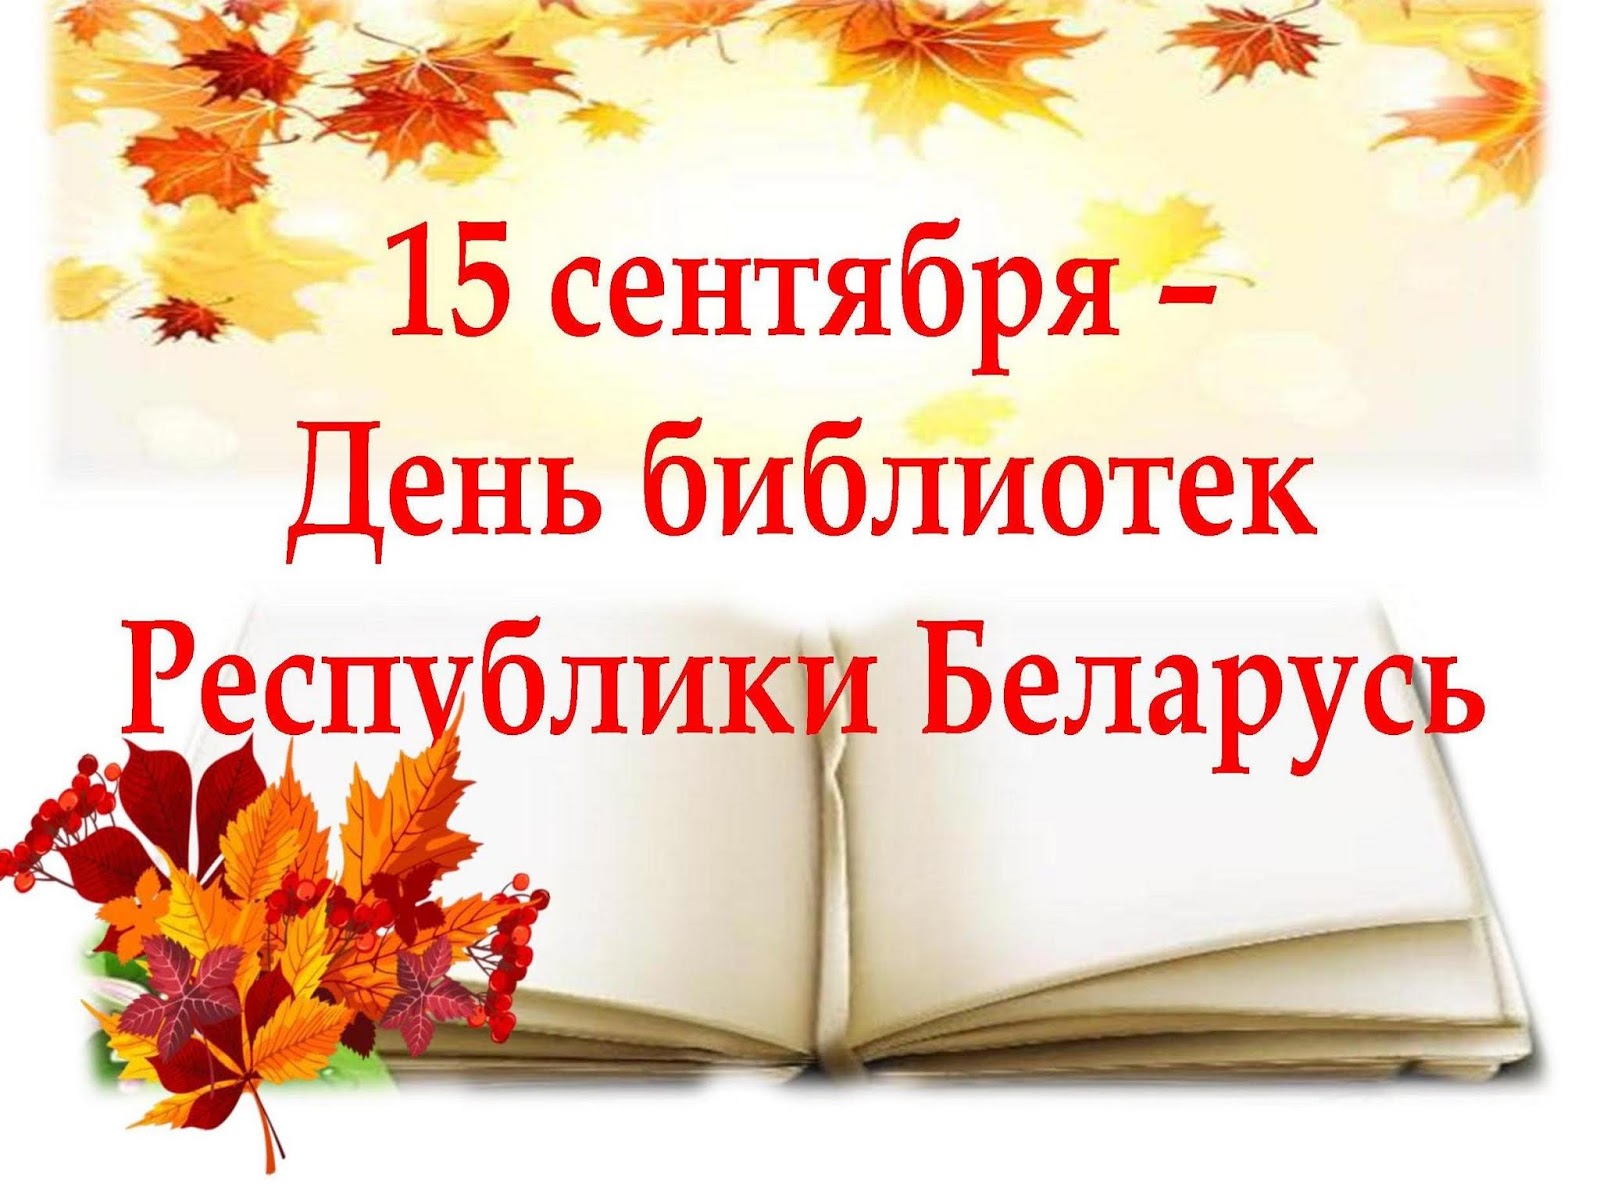 Поздравление Библиотекаря С Днем Единства Своим Читателям